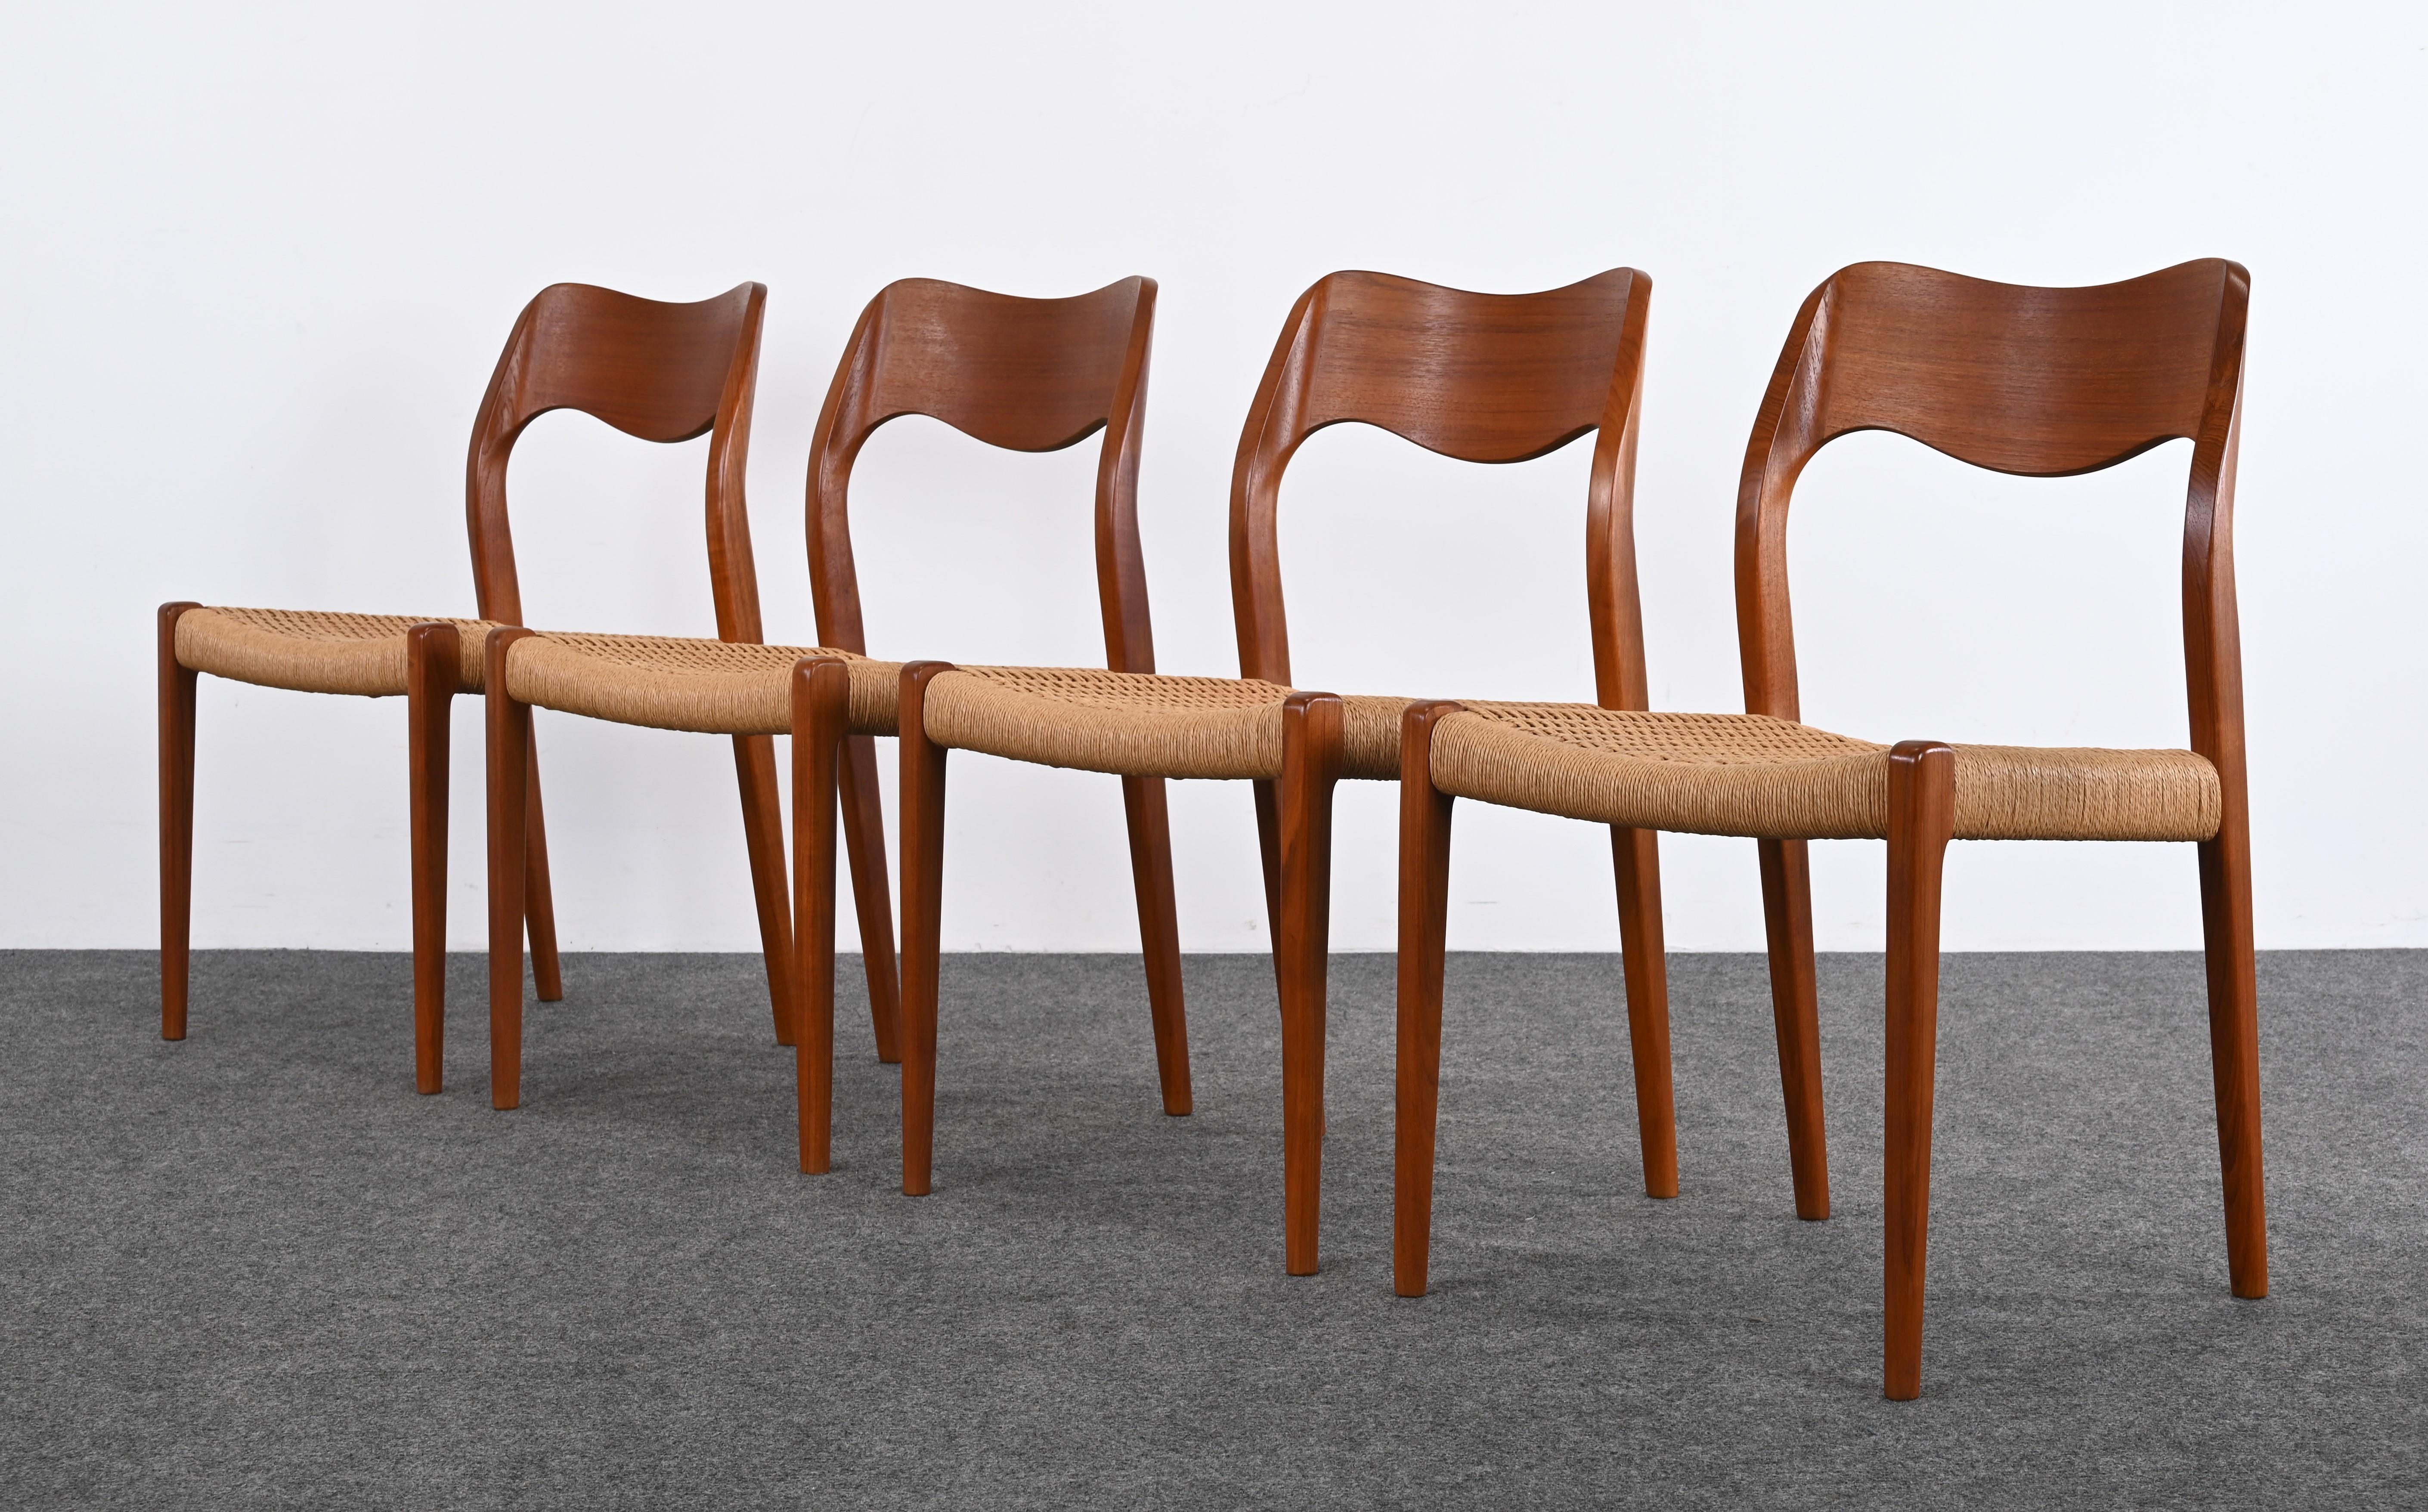 Precioso juego de cuatro sillas de comedor de teca modelo 71 diseñadas por Niels Otto Moller para J.L. Mollers Mobelfabrik, hacia la década de 1960. Este juego de cuatro sillas funcionaría bien con una mesa de comedor más pequeña o, si necesitas